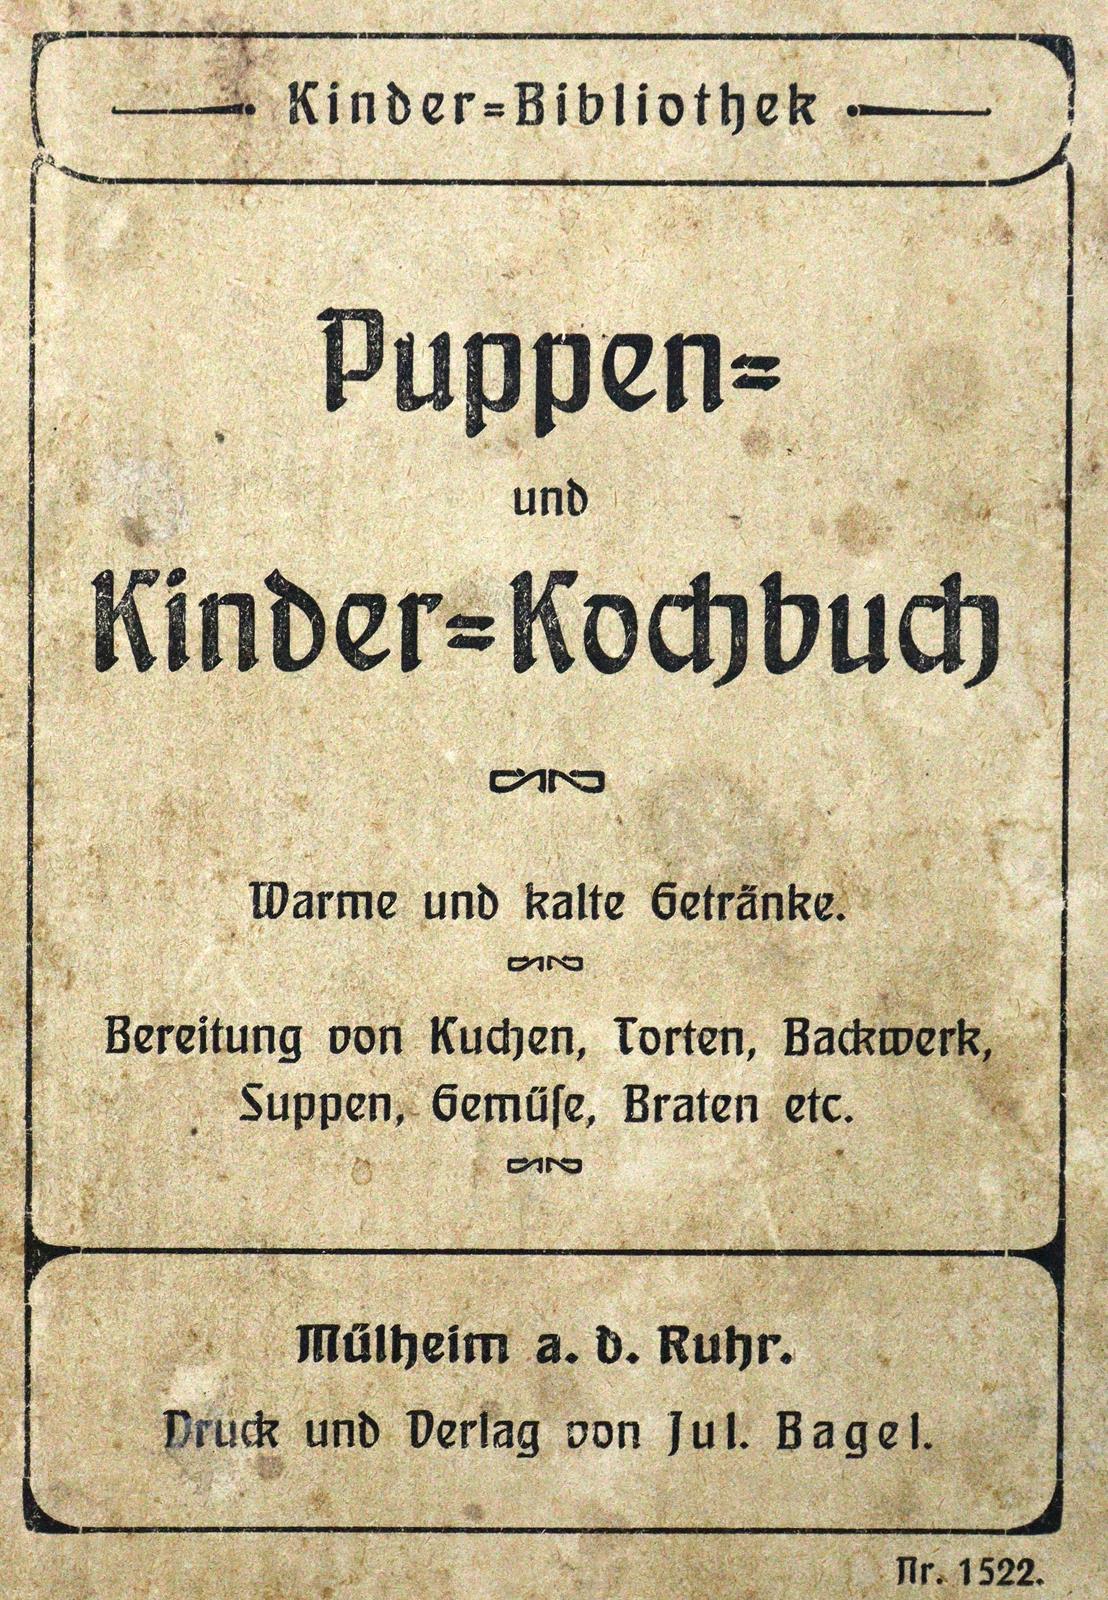 Puppen- und Kinder-Kochbuch. | Bild Nr.1